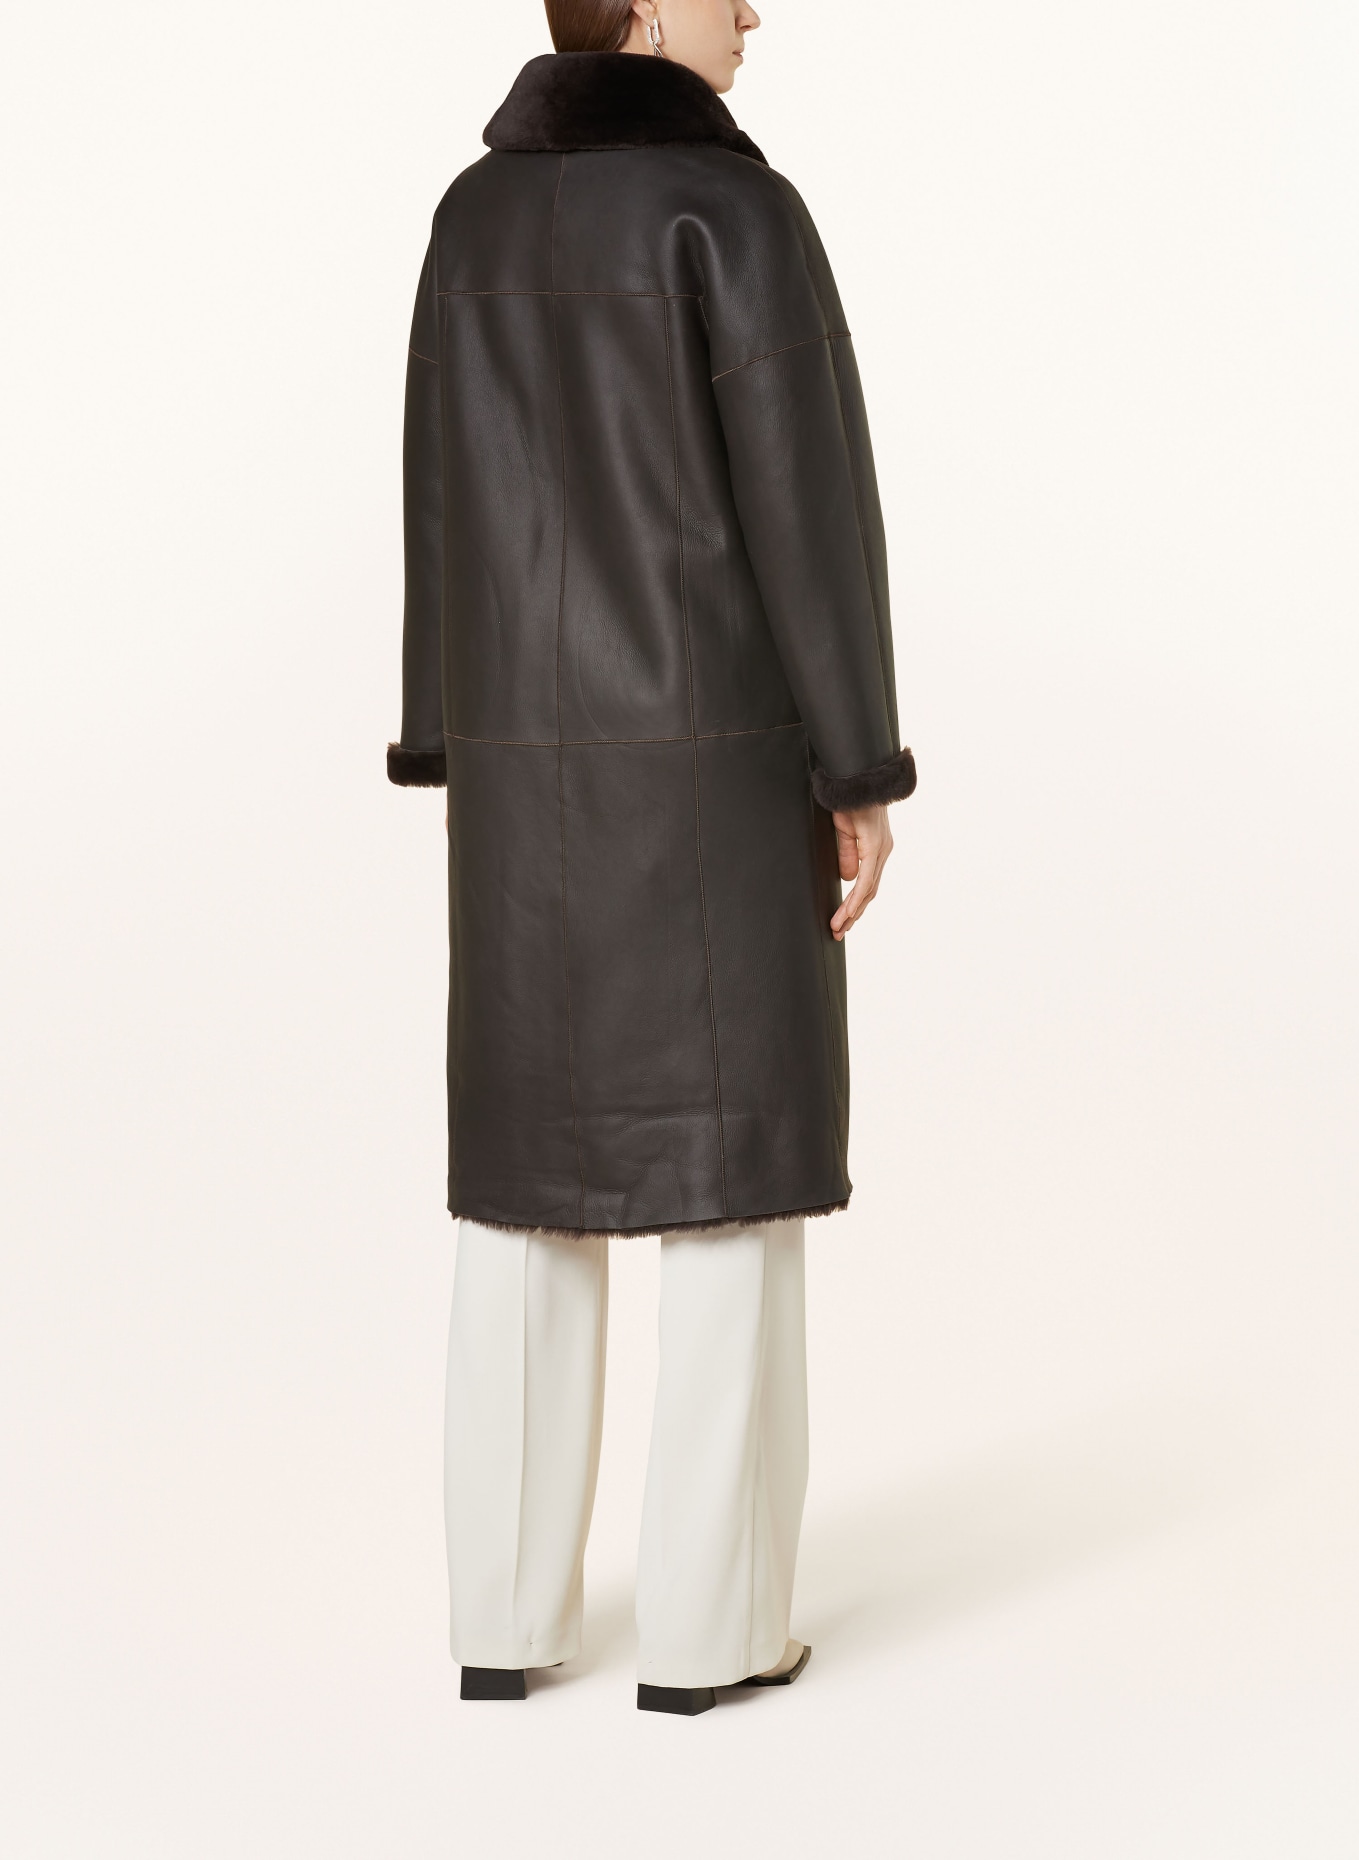 MRS & HUGS Reversible lambskin coat, Color: DARK BROWN (Image 4)